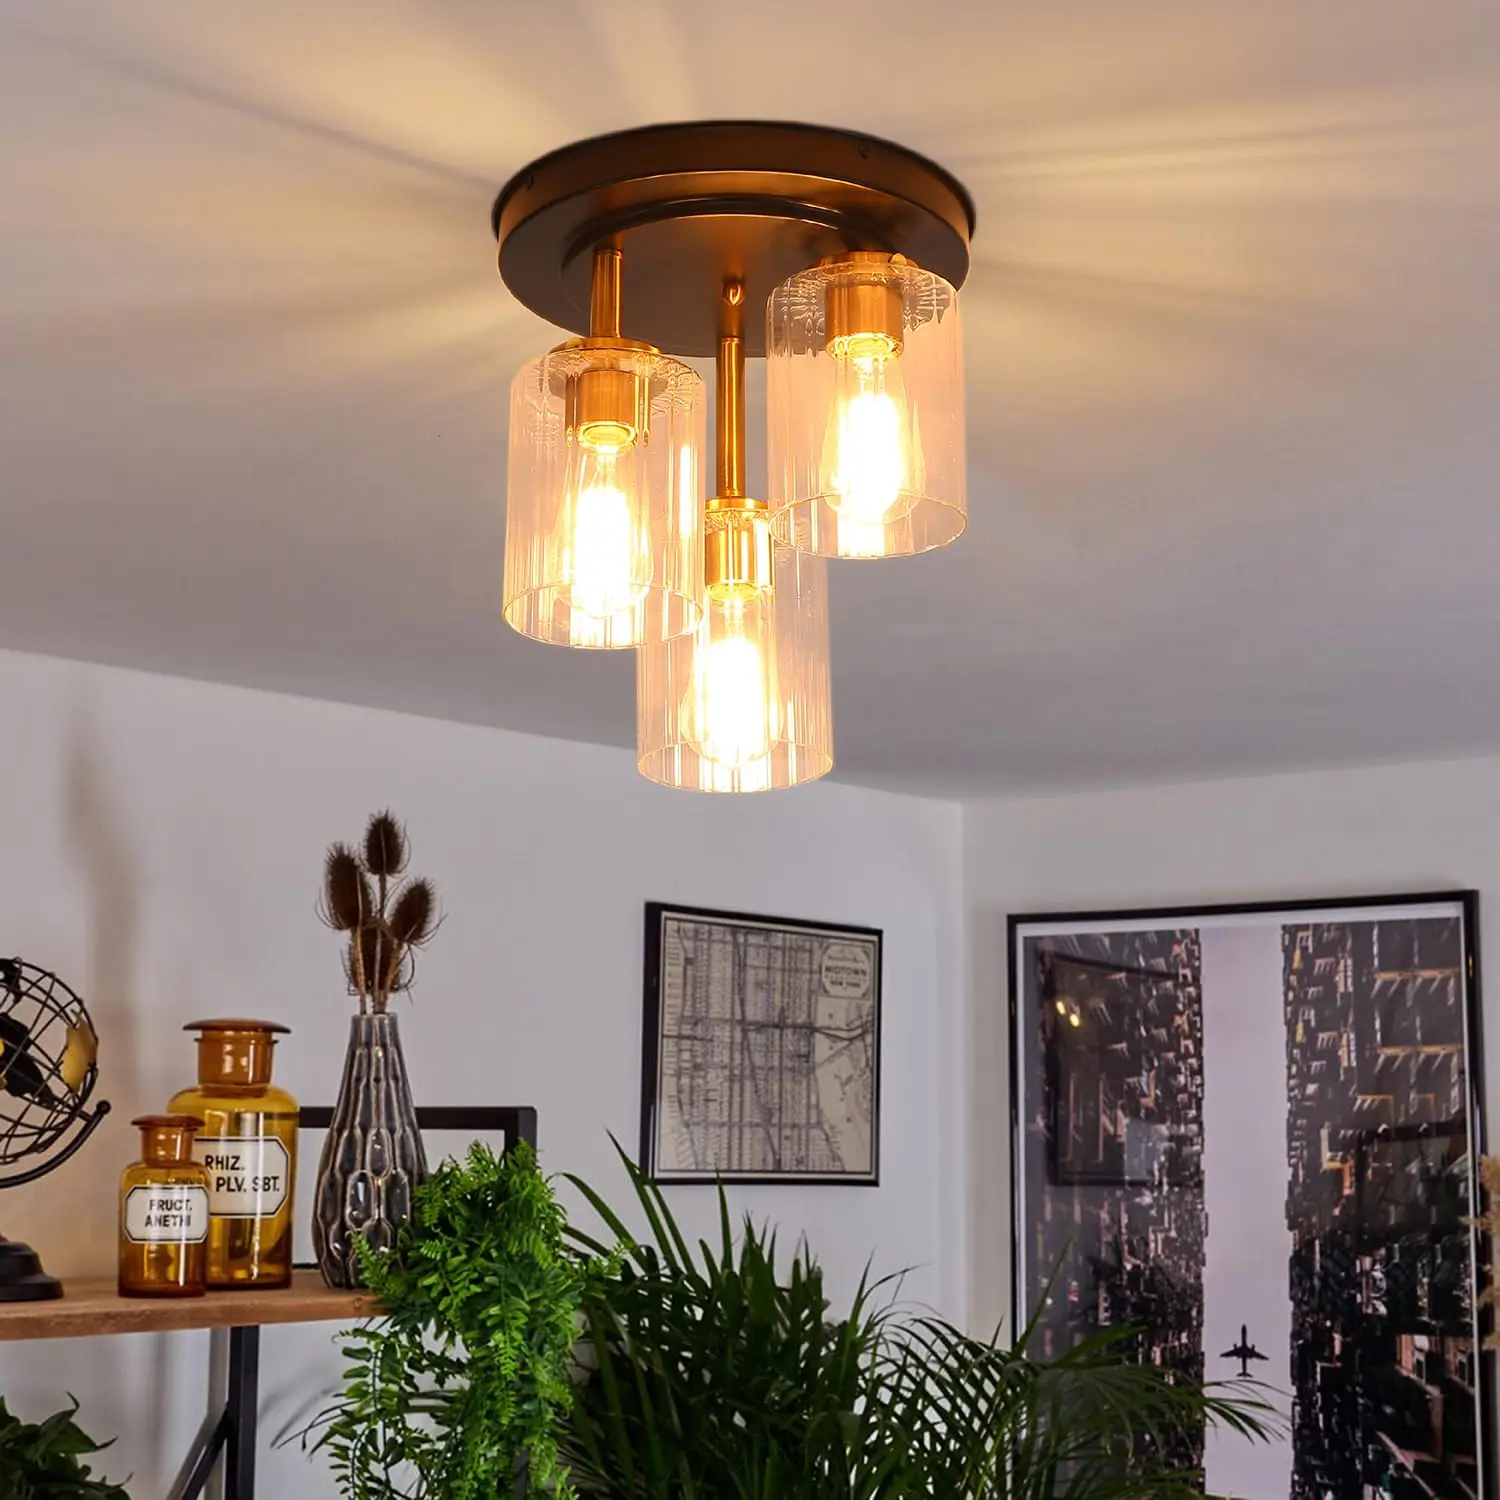 

Modern Glass Ceiling Lamp, Living Room Ceiling Light, 3 Light, Cylindrical, Kitchen, E27, 24x30cm